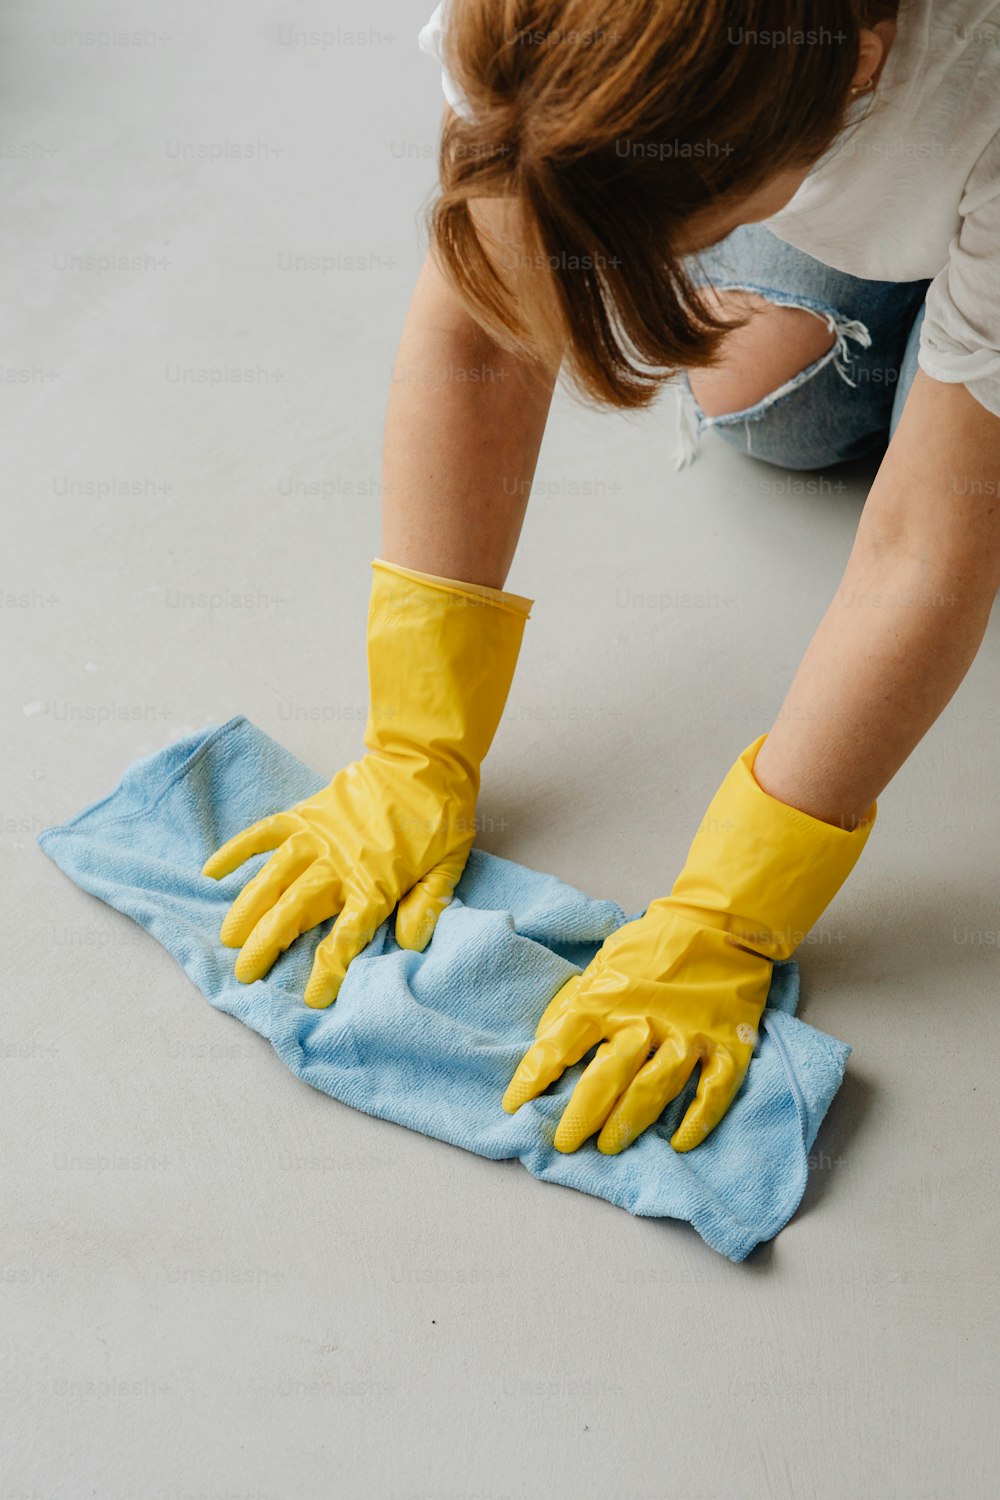 青いタオルを拭く黄色い手袋をはめた女性